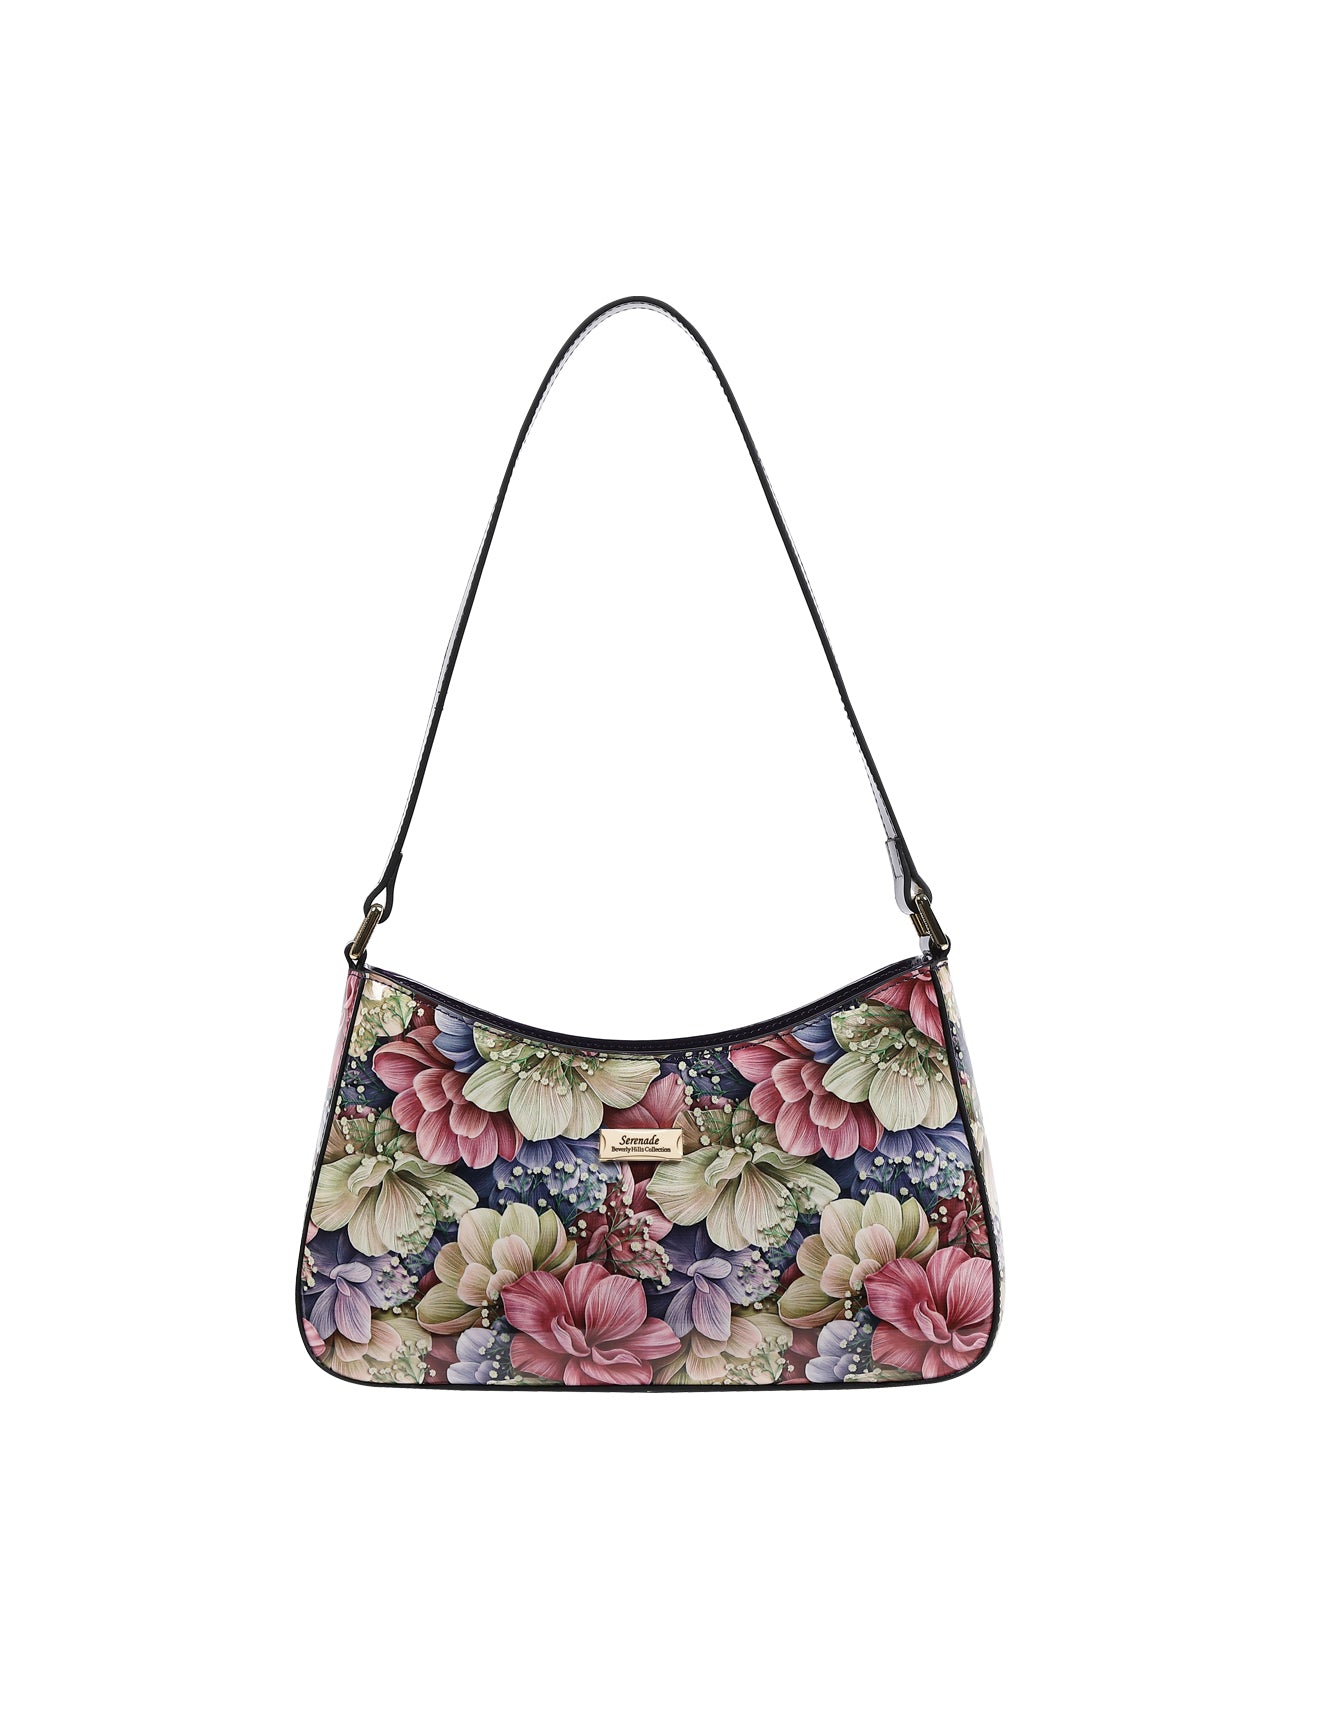 Serenade - SN57-0821 Small Angelique floral handbag- Floral